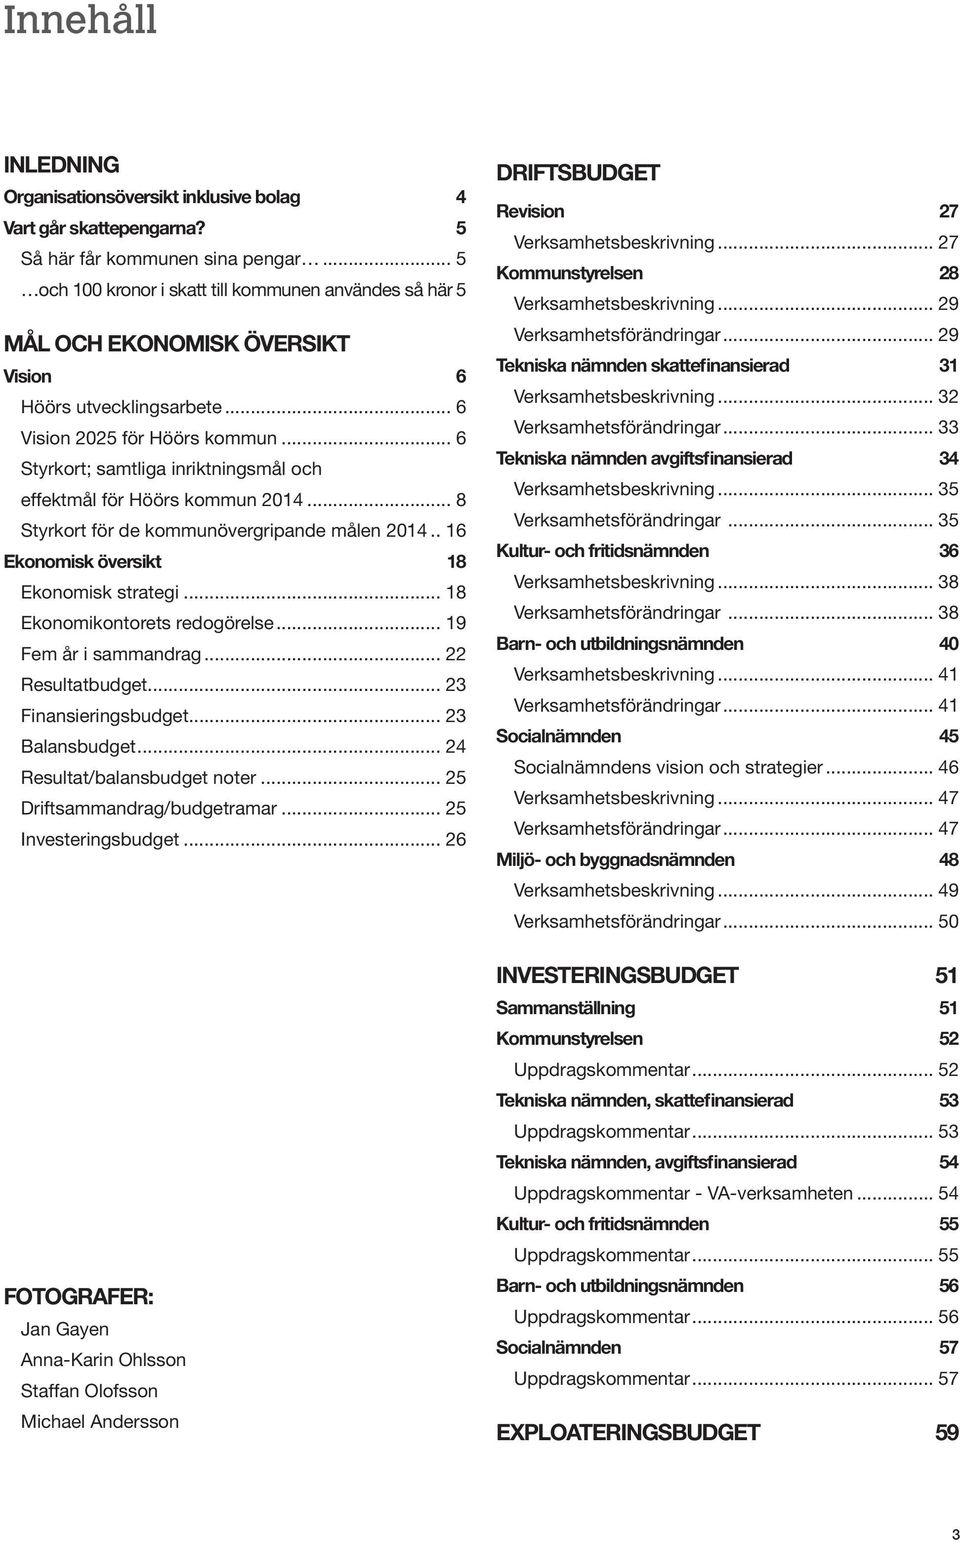 .. 6 Styrkort; samtliga inriktningsmål och effektmål för Höörs kommun 2014... 8 Styrkort för de kommunövergripande målen 2014.. 16 Ekonomisk översikt 18 Ekonomisk strategi.